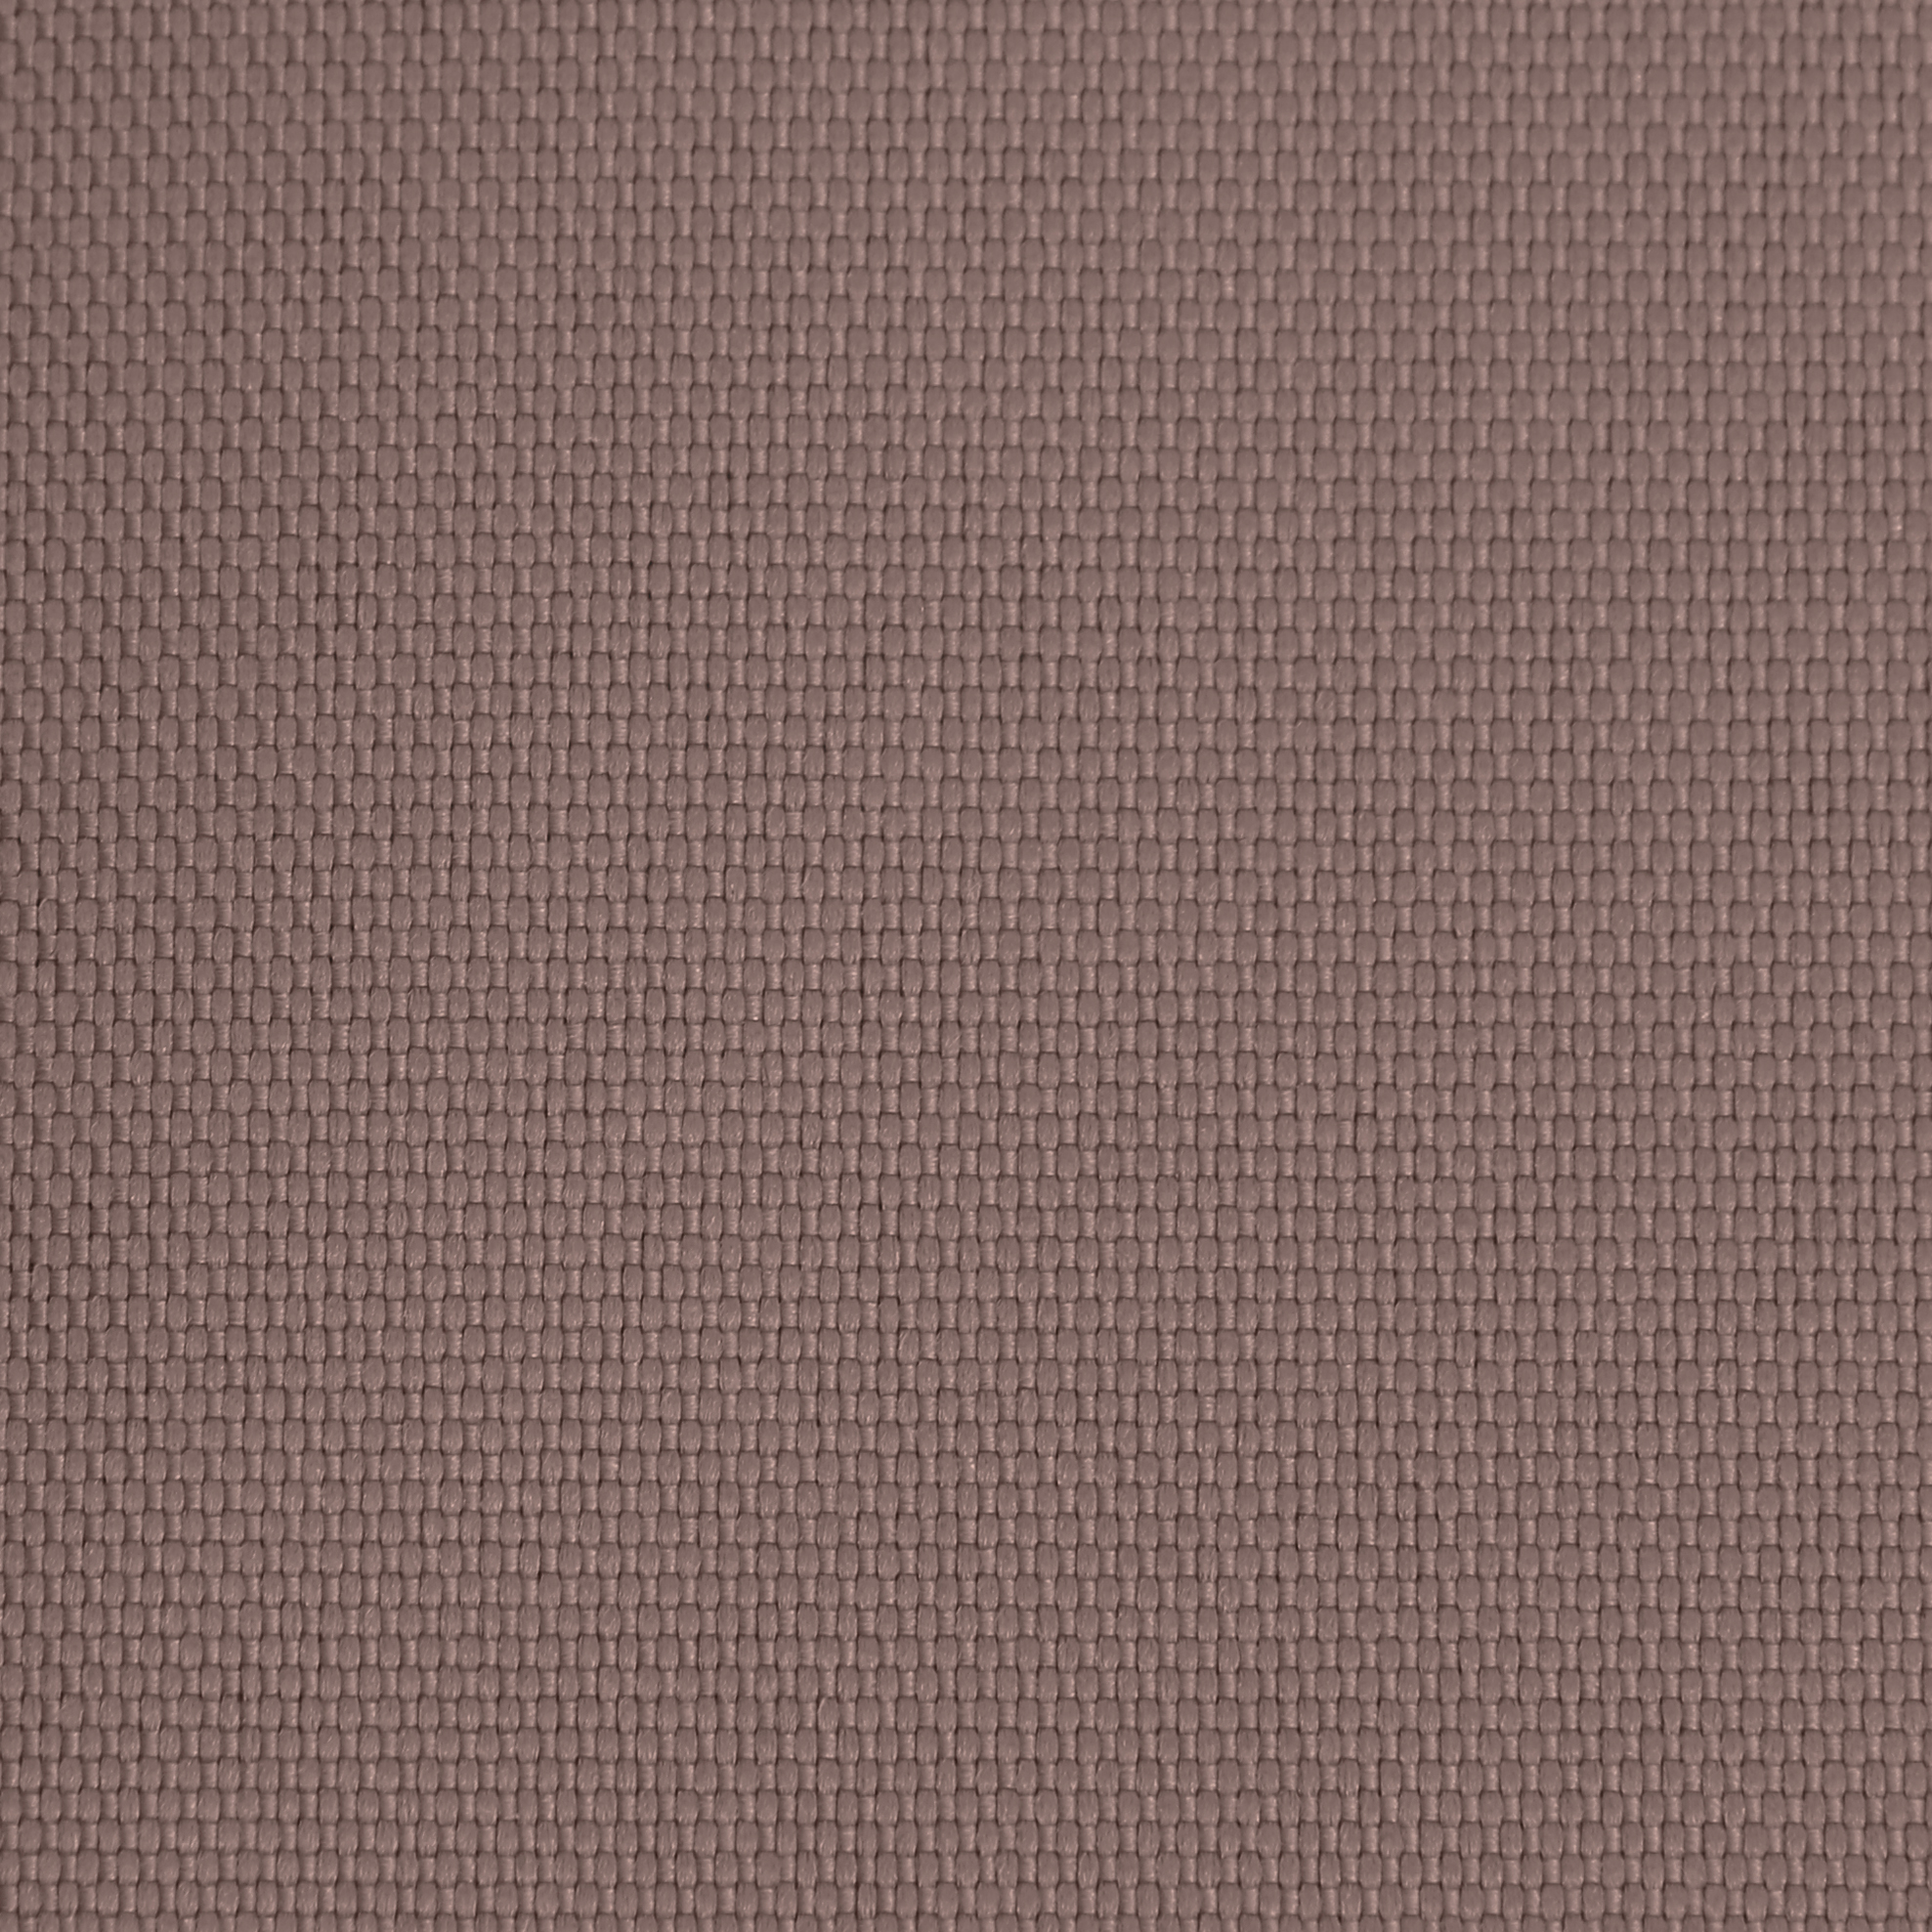 Ткань Оксфорд 600D размер 2м*1,5 арт. 600200670 цвет коричневый